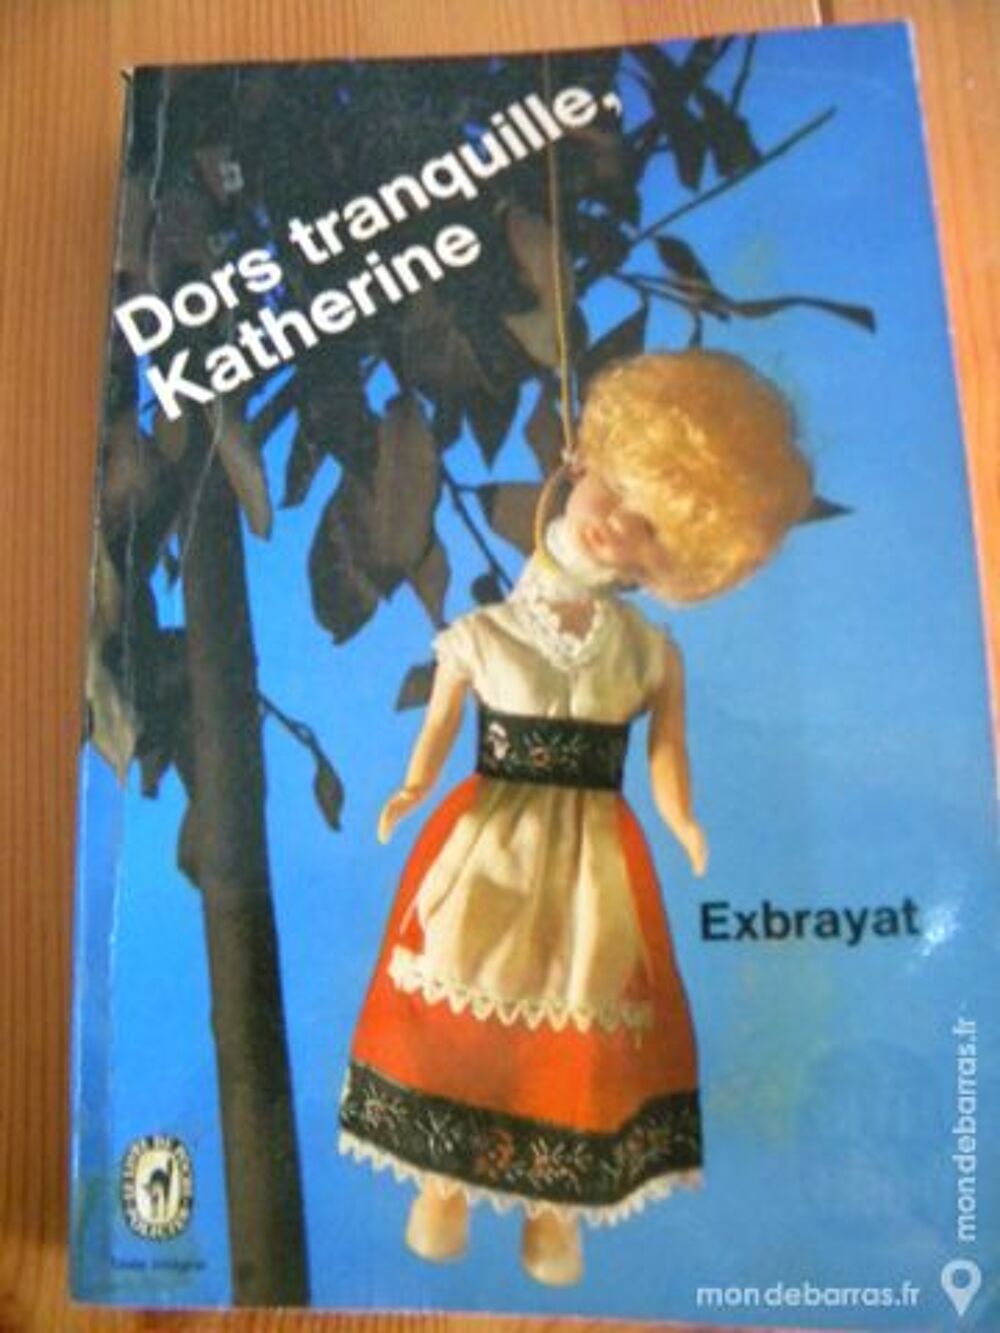 Dors tranquille Katherine de Exbrayat - 1967 Livres et BD